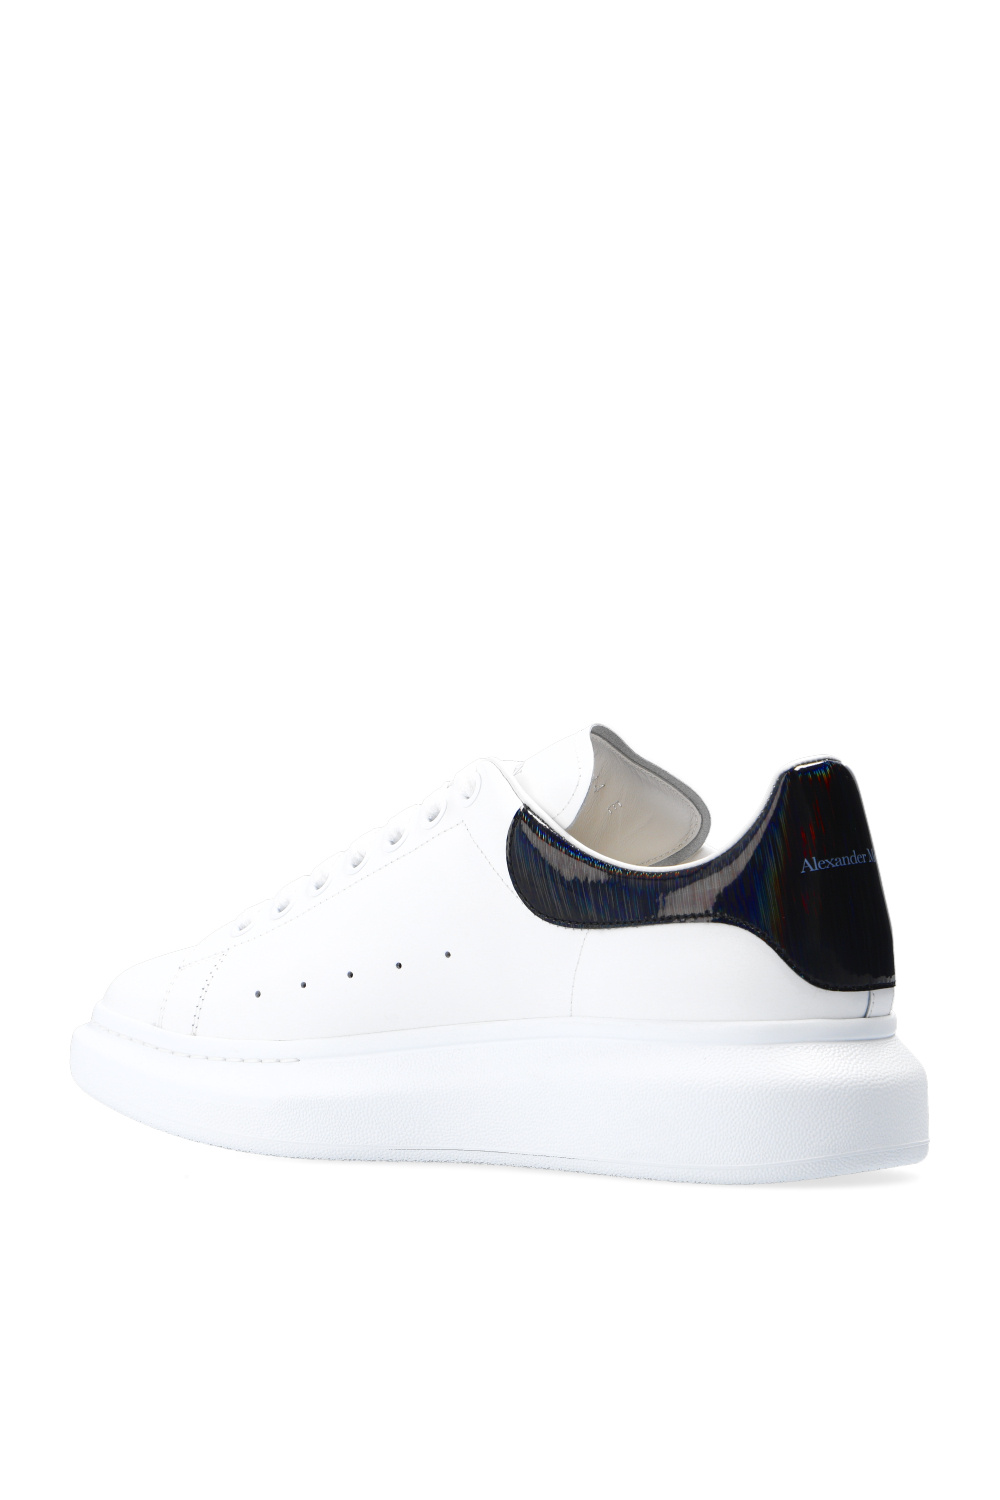 Alexander McQueen 'Larry' sneakers | Men's Shoes | IetpShops